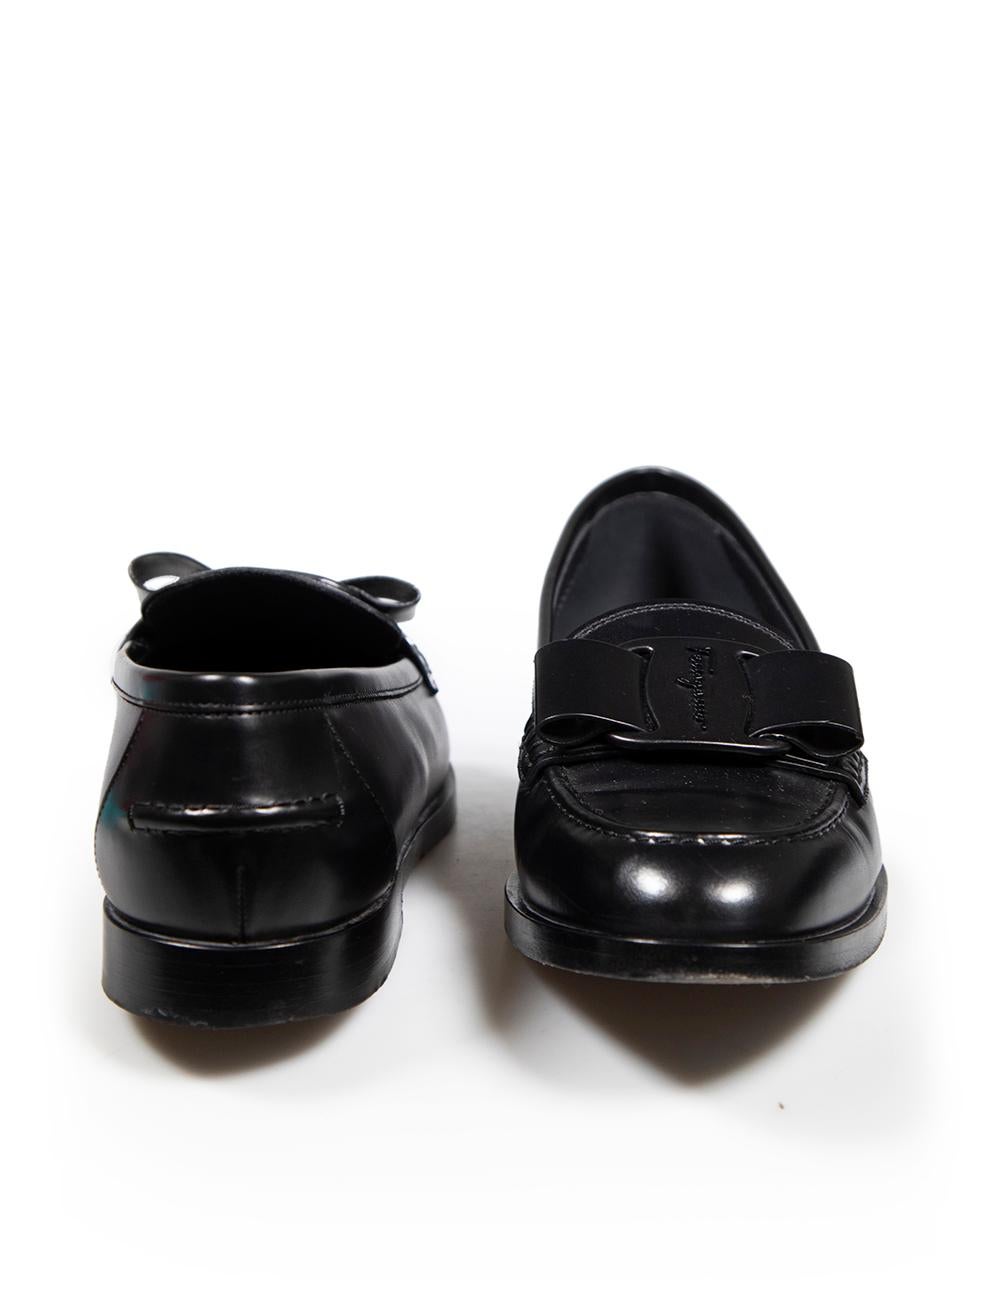 Salvatore Ferragamo Black Leather Vivaldo Logo Loafers Size US 9 In Good Condition For Sale In London, GB